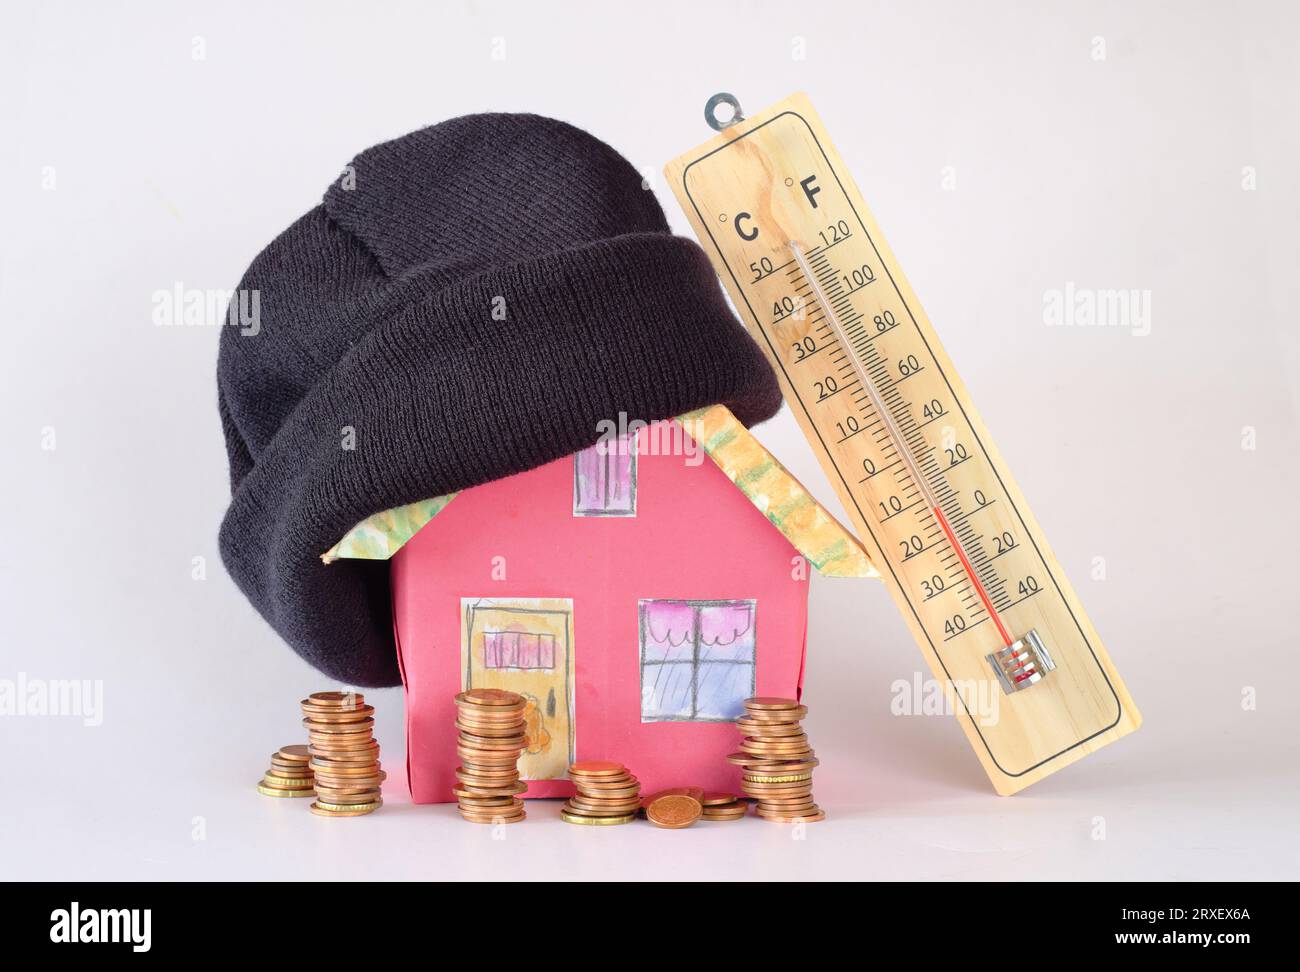 Modelo de casa con sombrero de invierno, pilas de dinero y termómetro. Aumento de los costos de calefacción, aislamiento térmico y precios de la energía debido a la escasez de gas de calefacción, Foto de stock